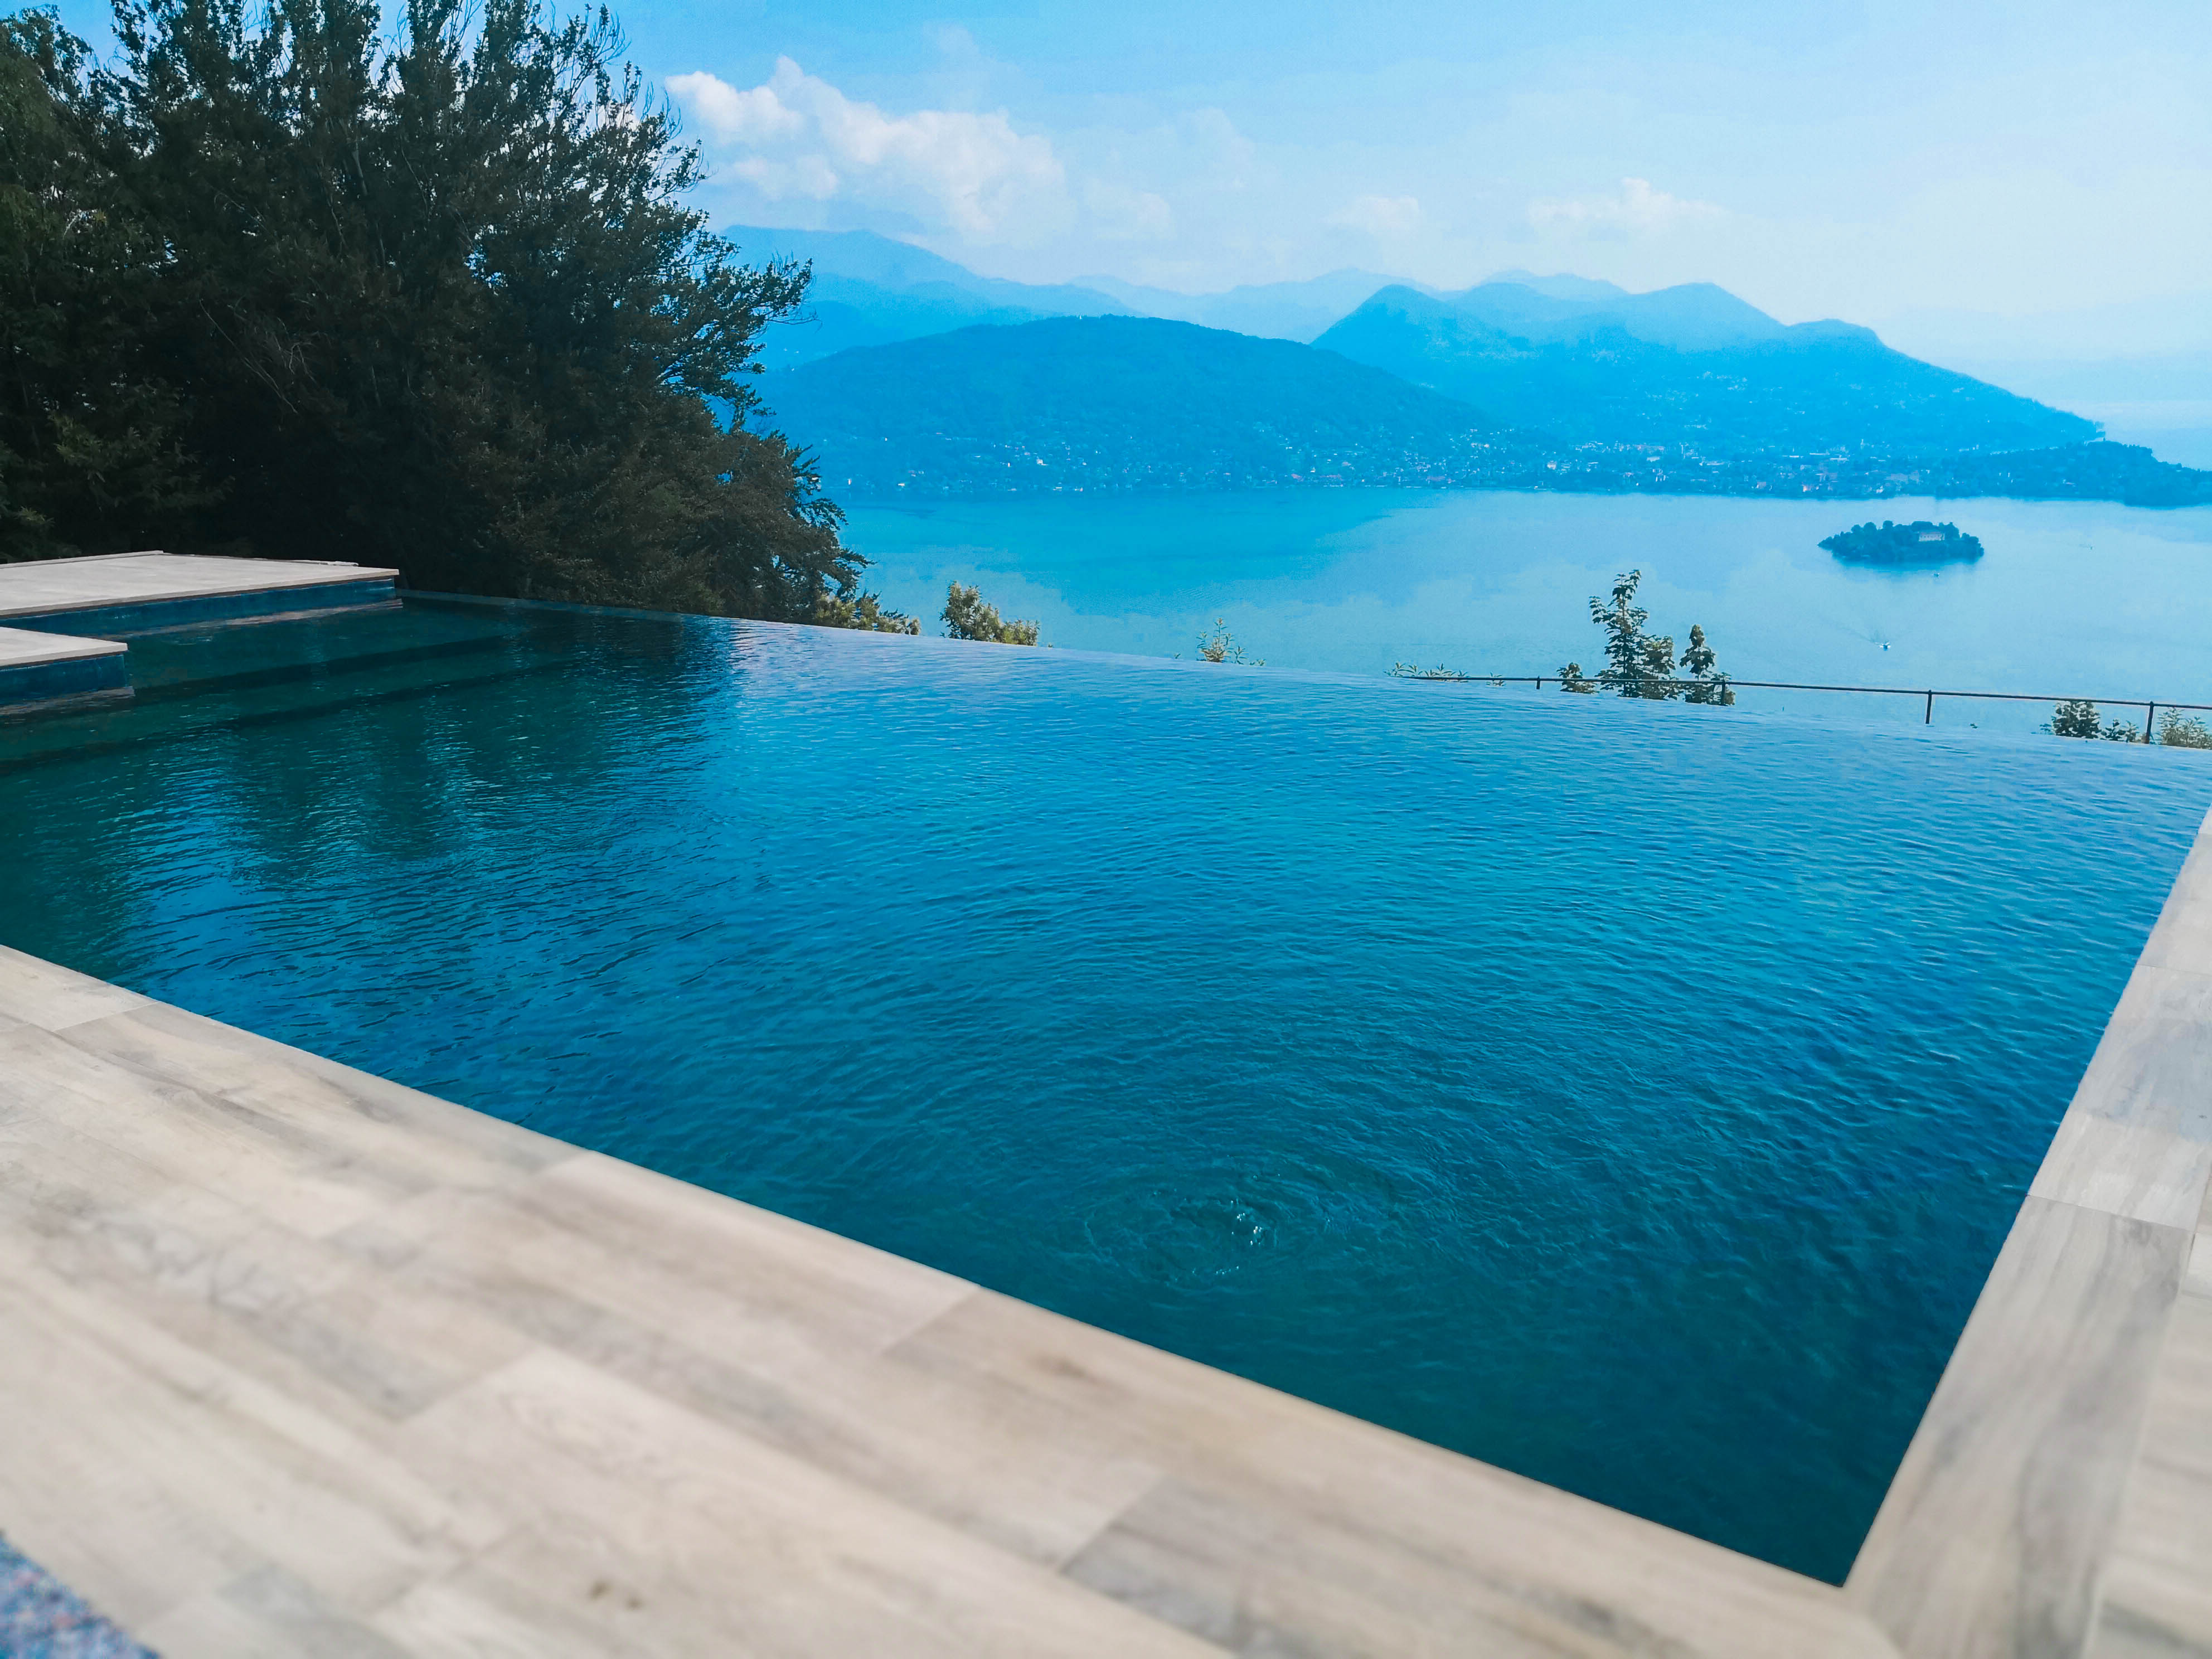 Realizzata piscina interna ed esterna a sfioro in una villa sul Lago Maggiore.